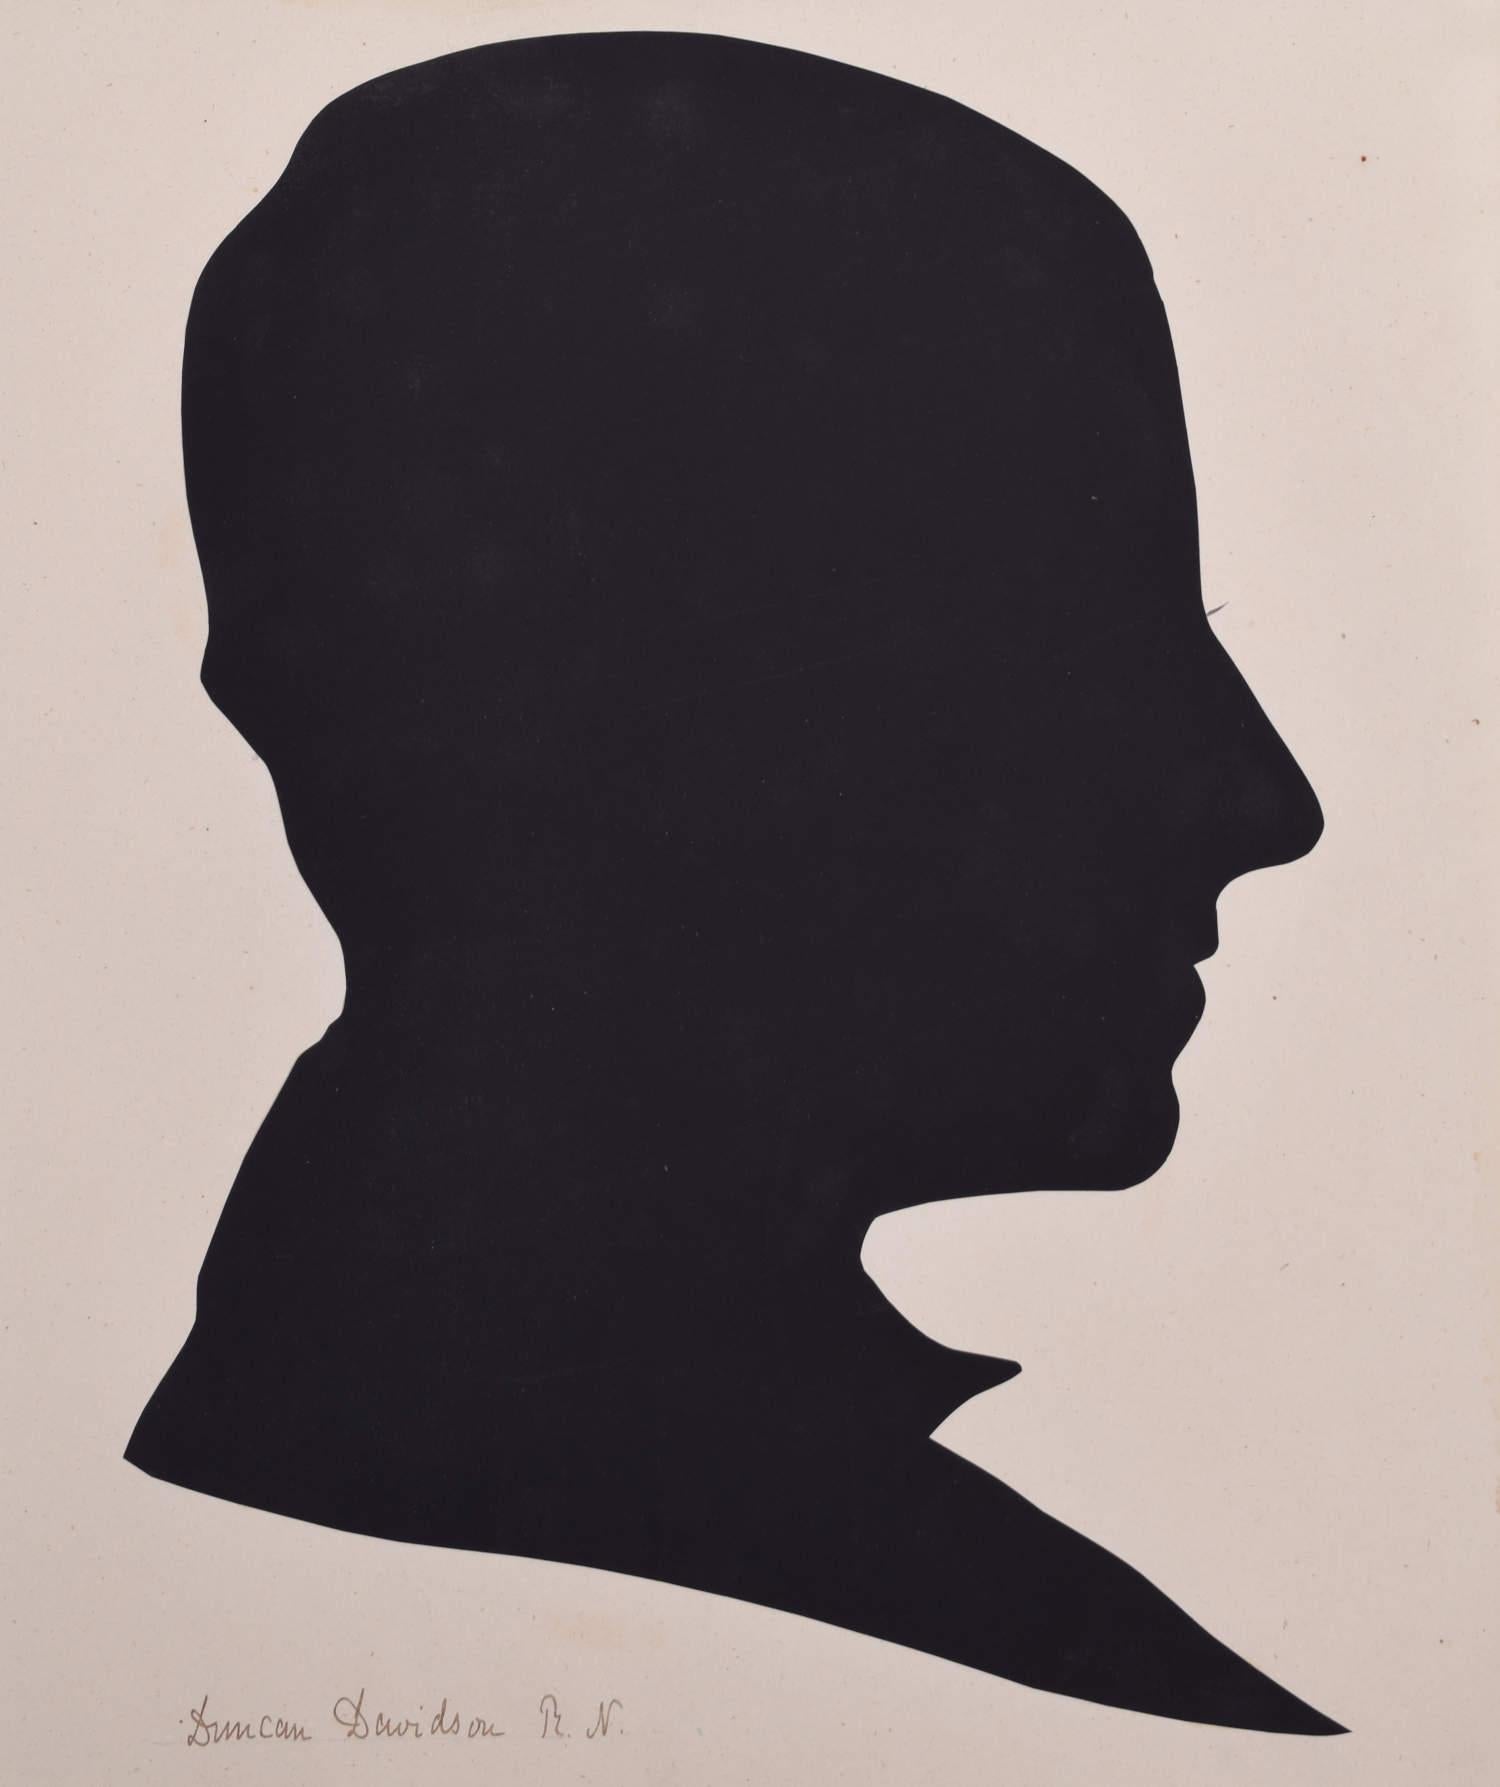 Unknown Black and White Photograph – Silhouette eines Gentleman aus dem neunzehnten Jahrhundert: Duncan Davidson RN